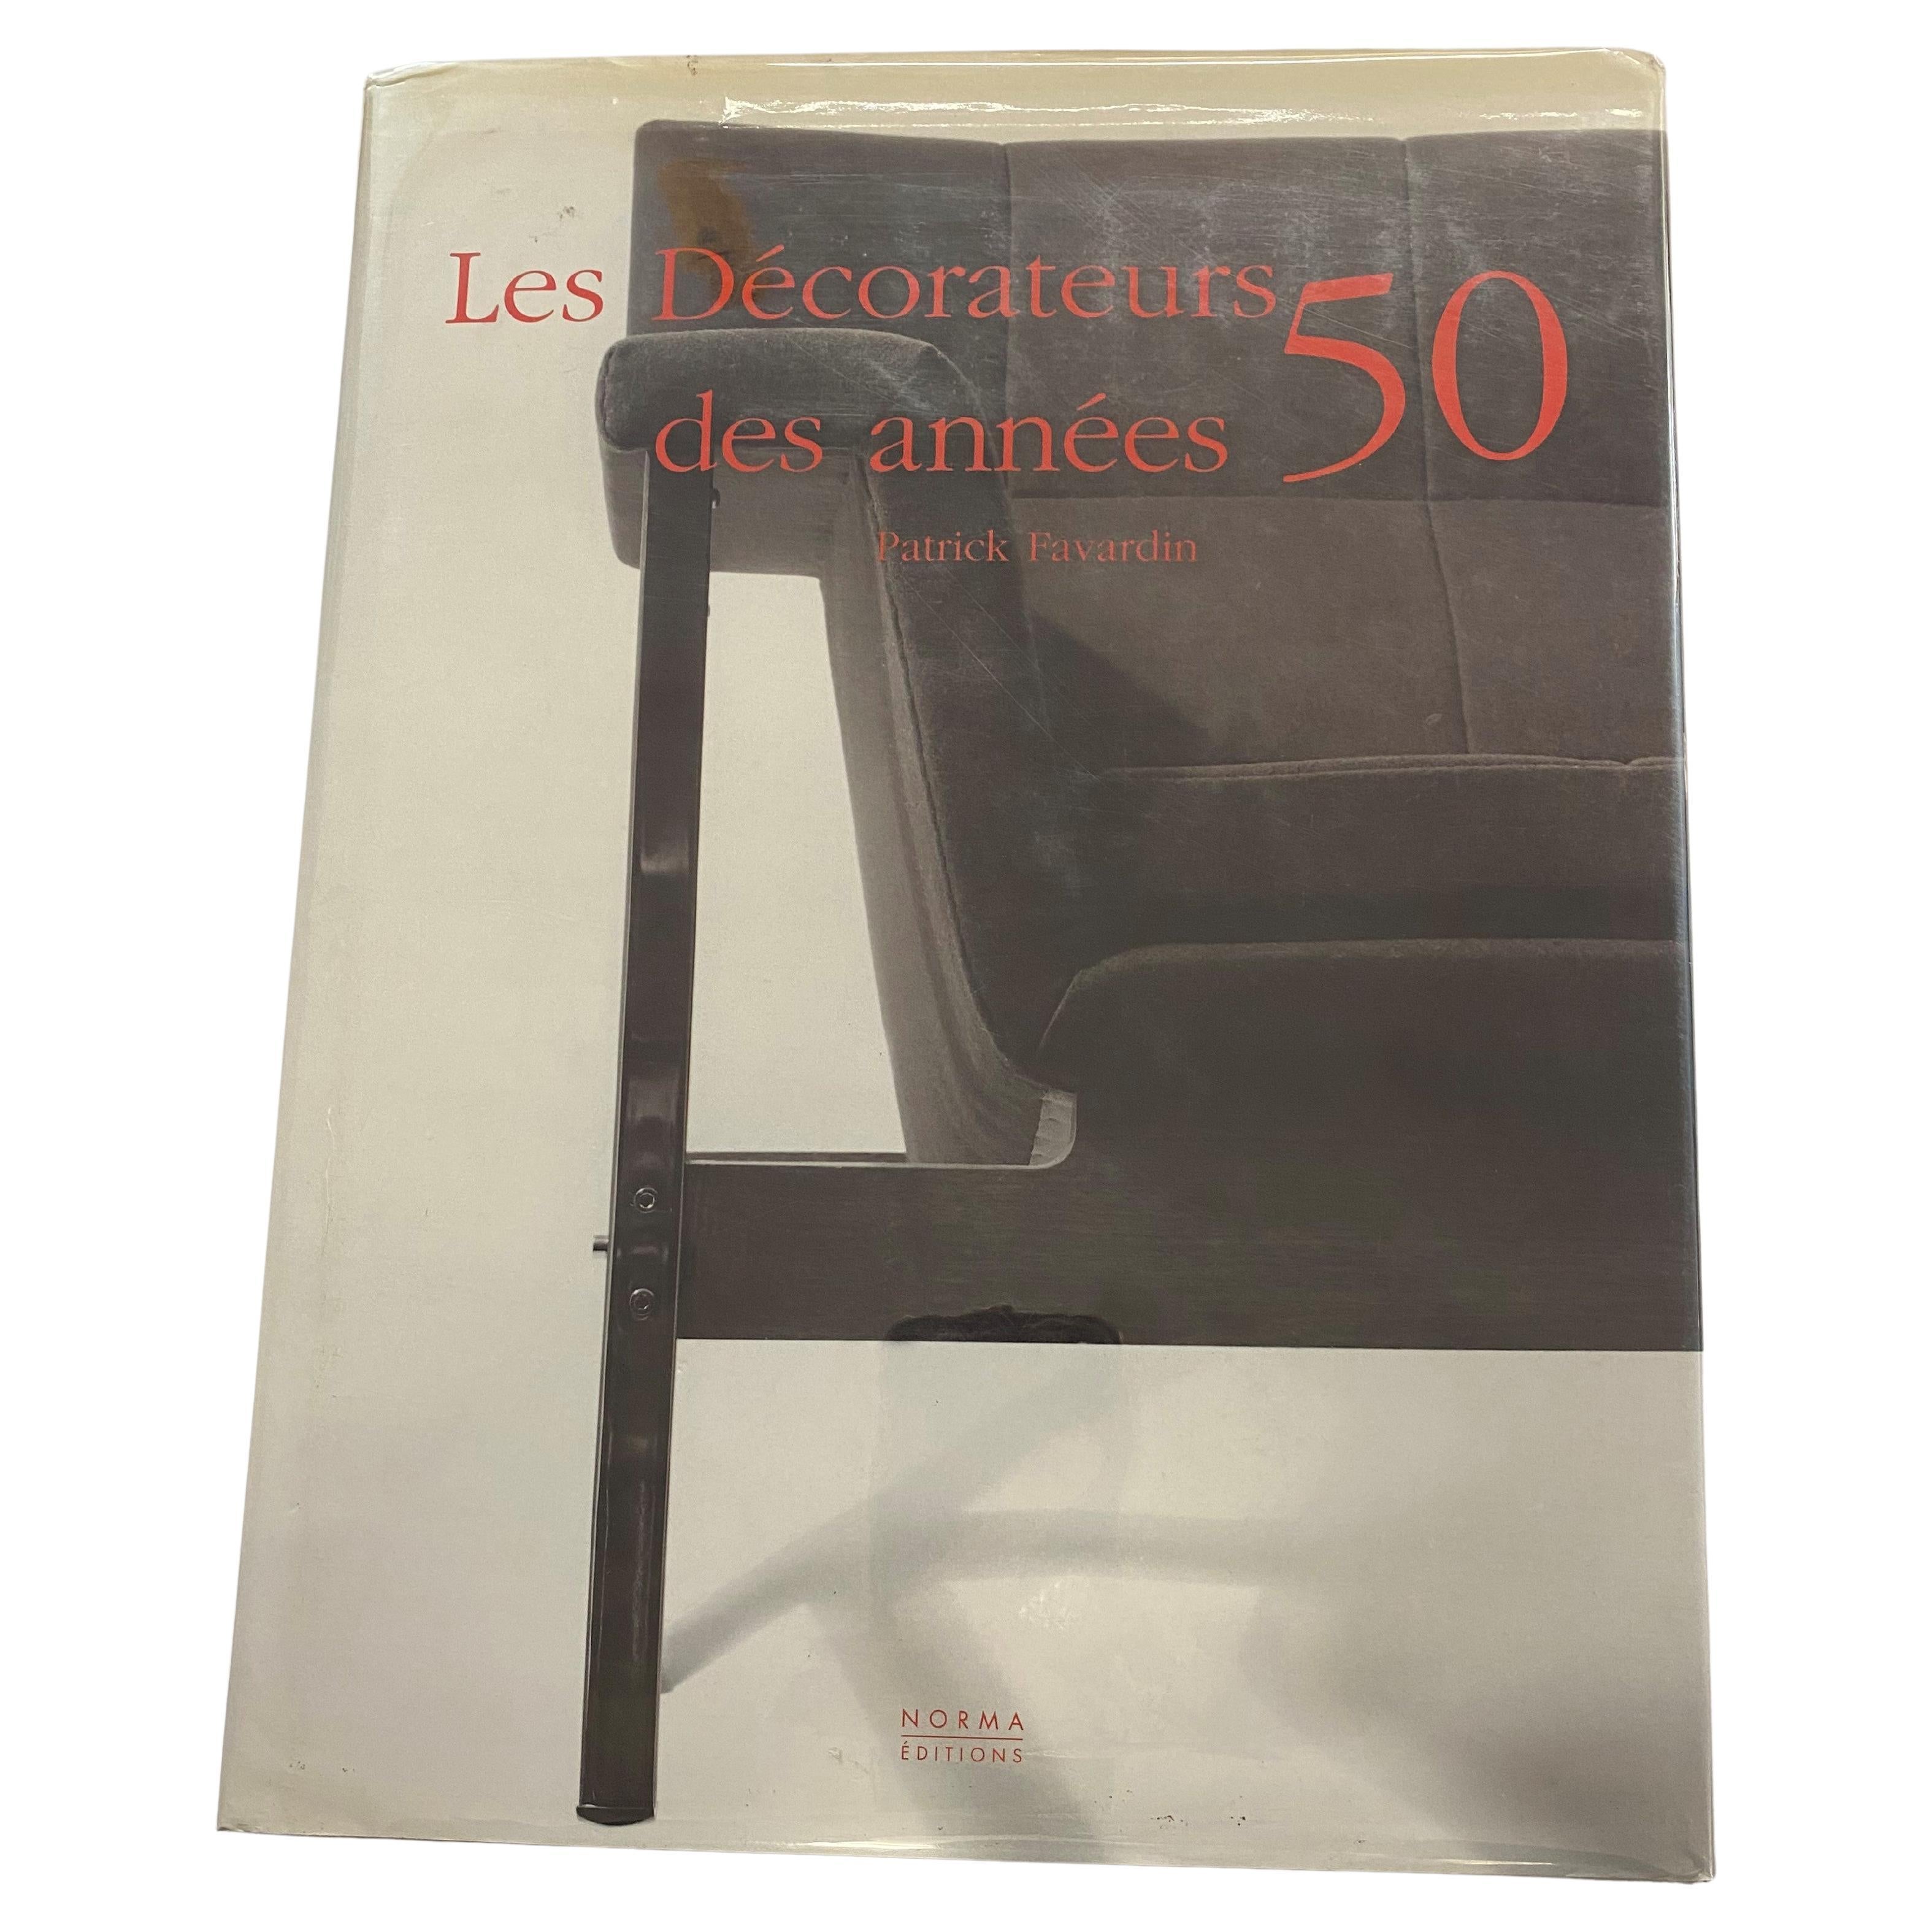 Les Decorateurs des annees 50 by Paterick Favardin (Book)